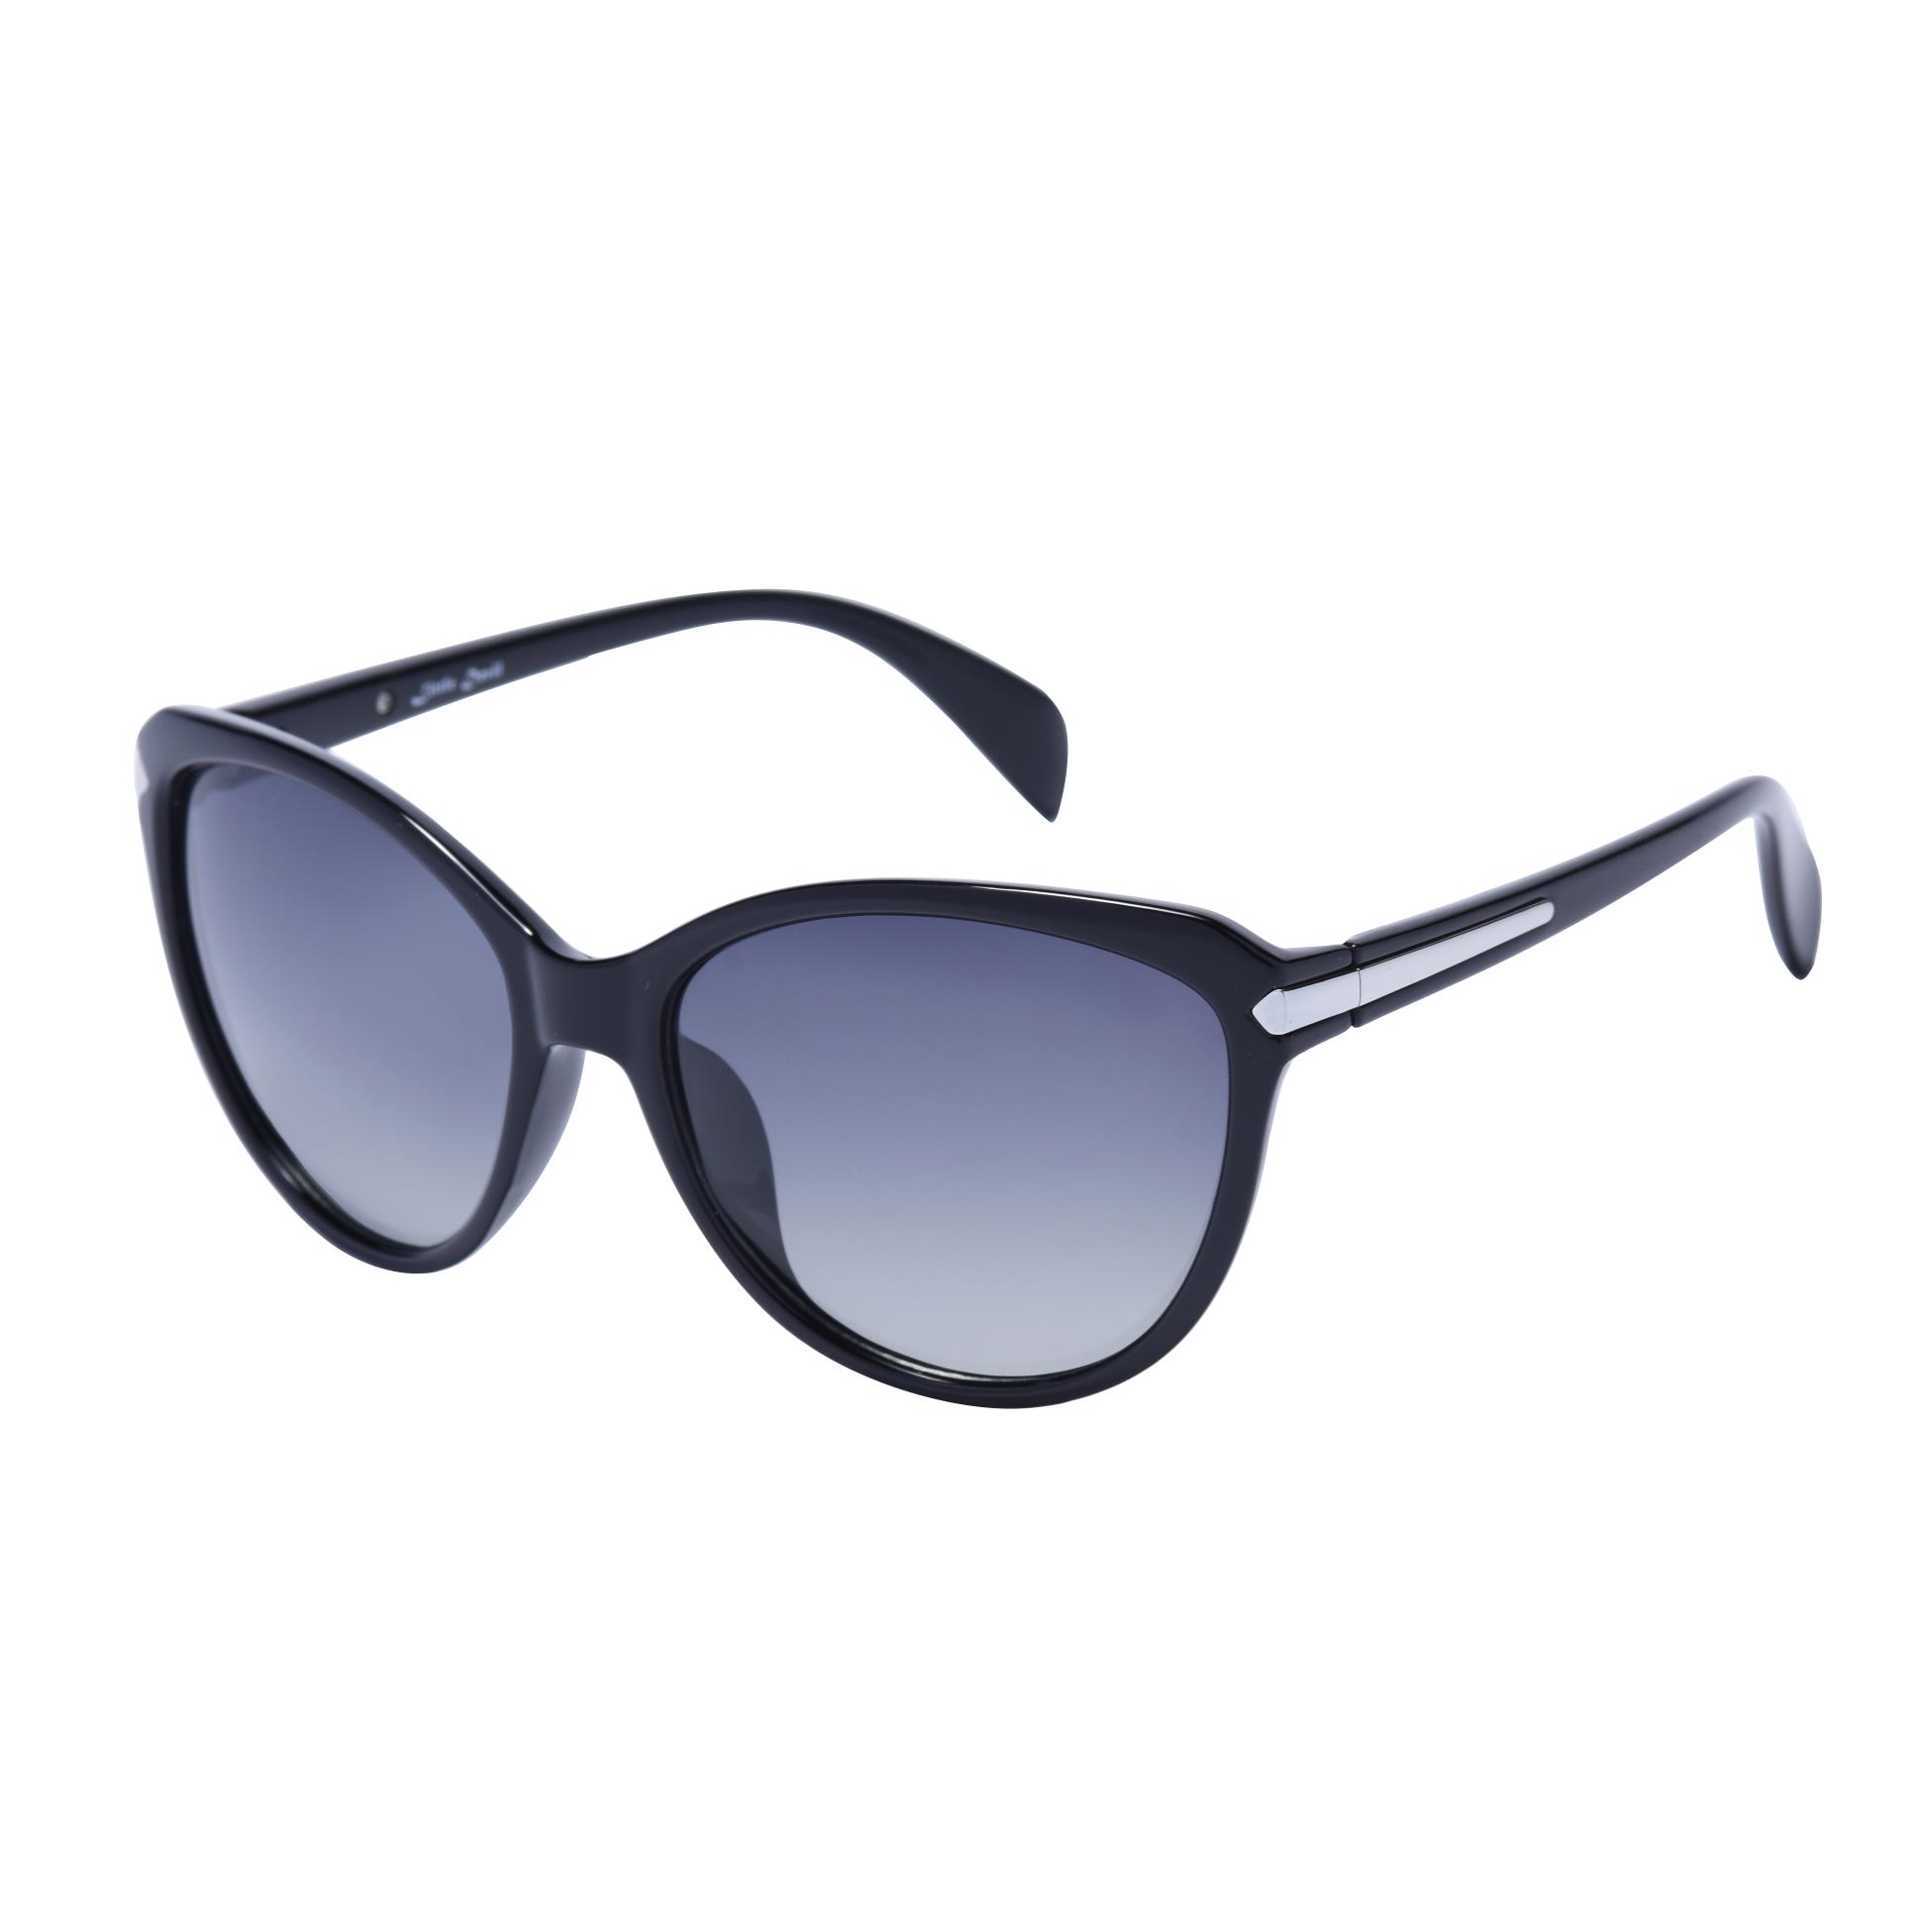 Óculos de sol cateye femininos da moda 5505